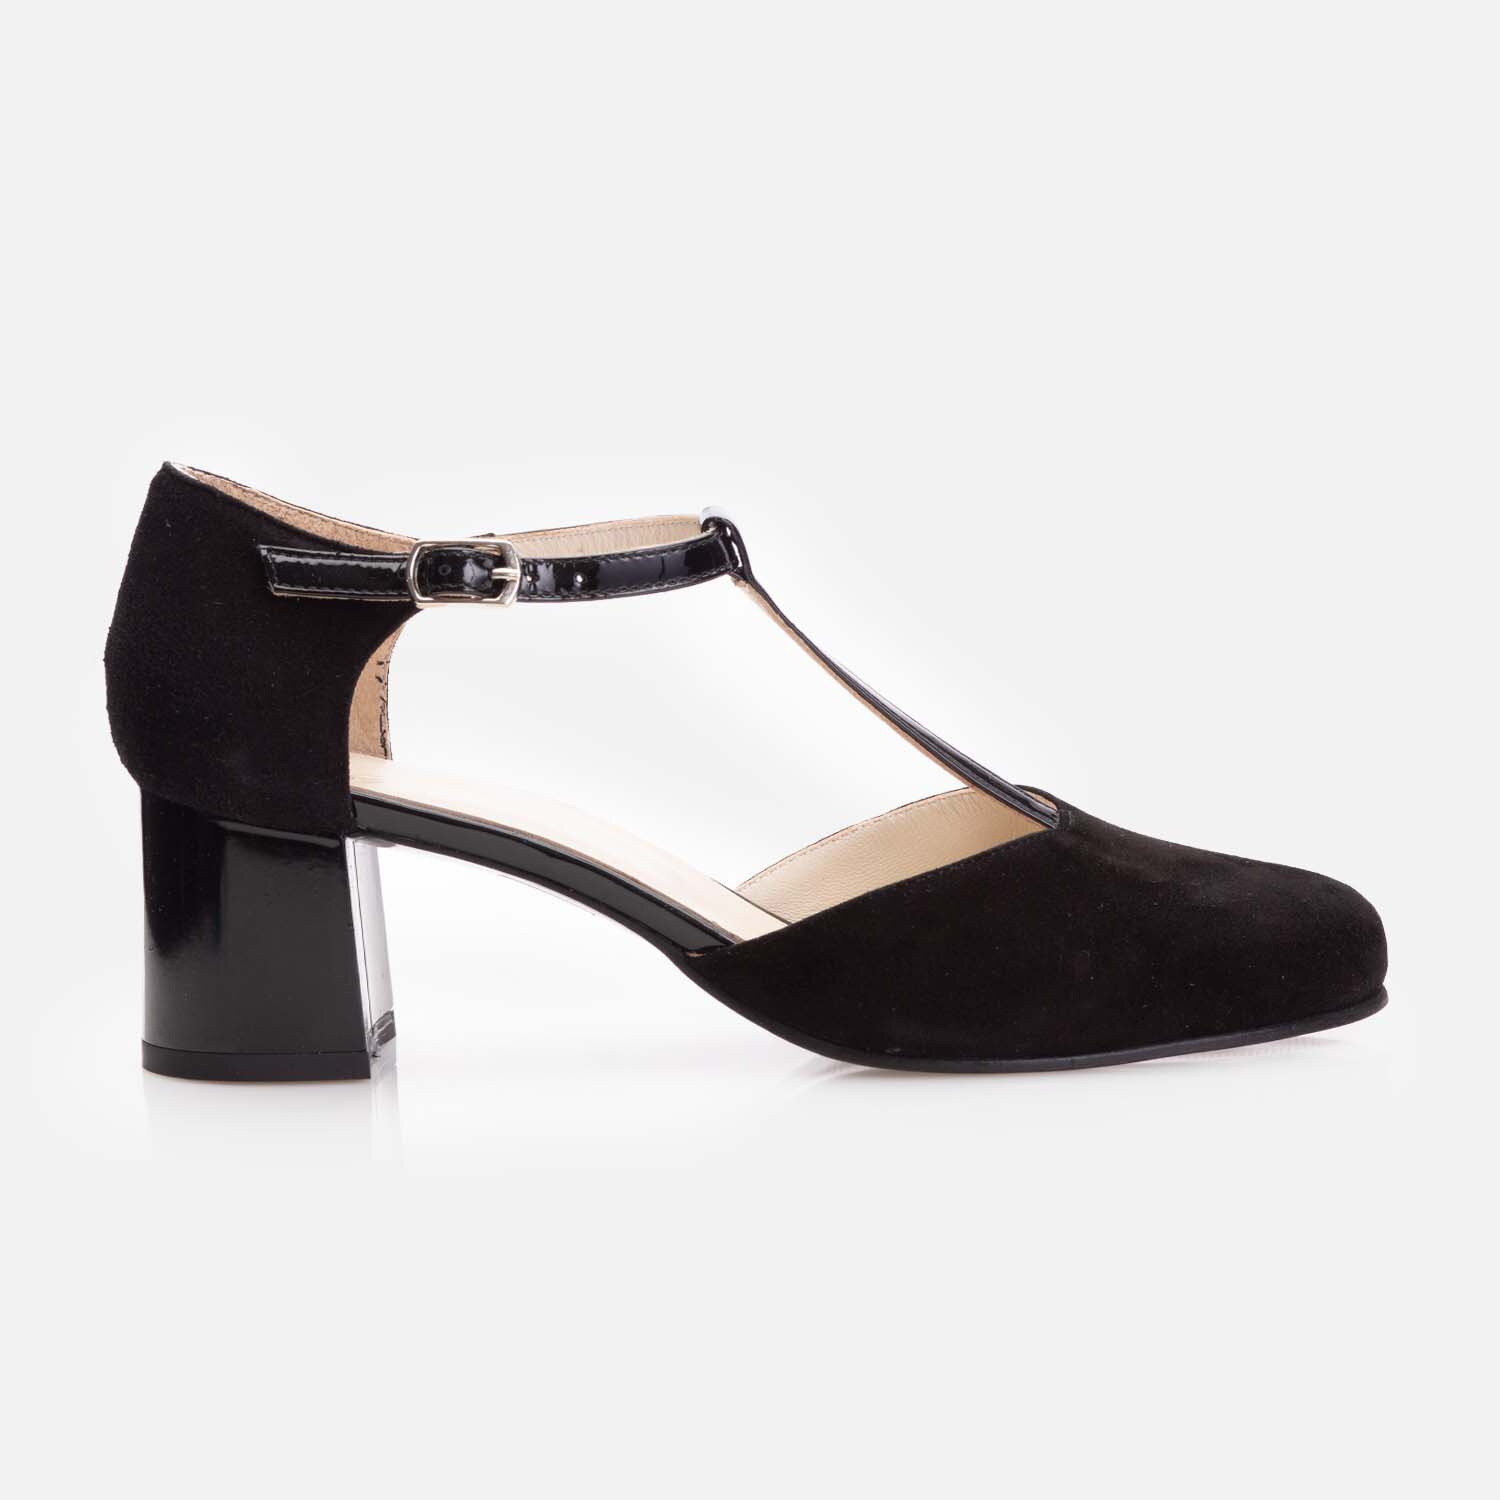 Pantofi eleganți damă decupați din piele naturală - 183 Negru Velur